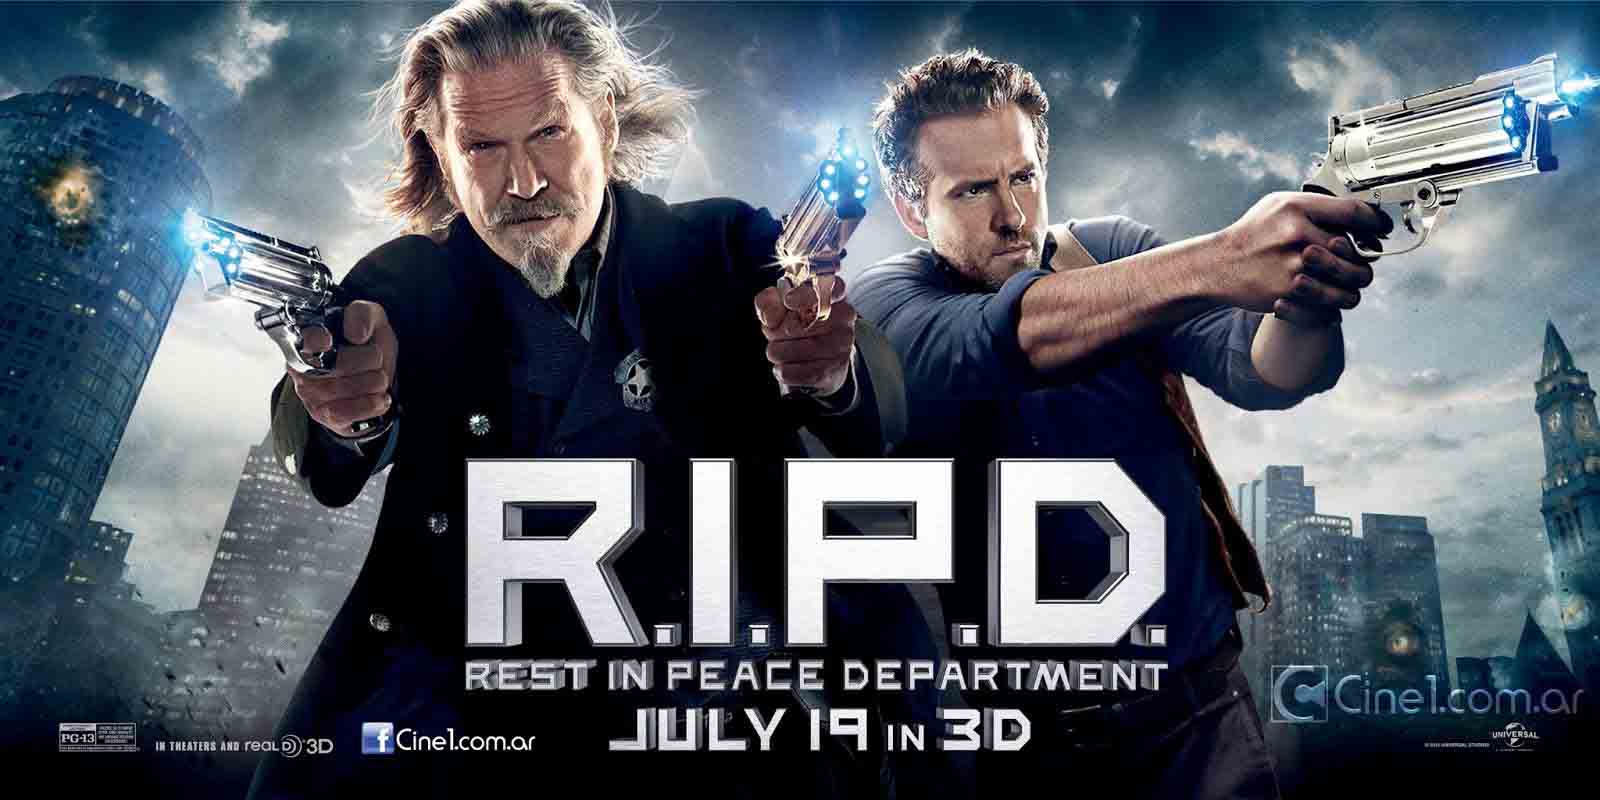 Movie Review: R.I.P.D